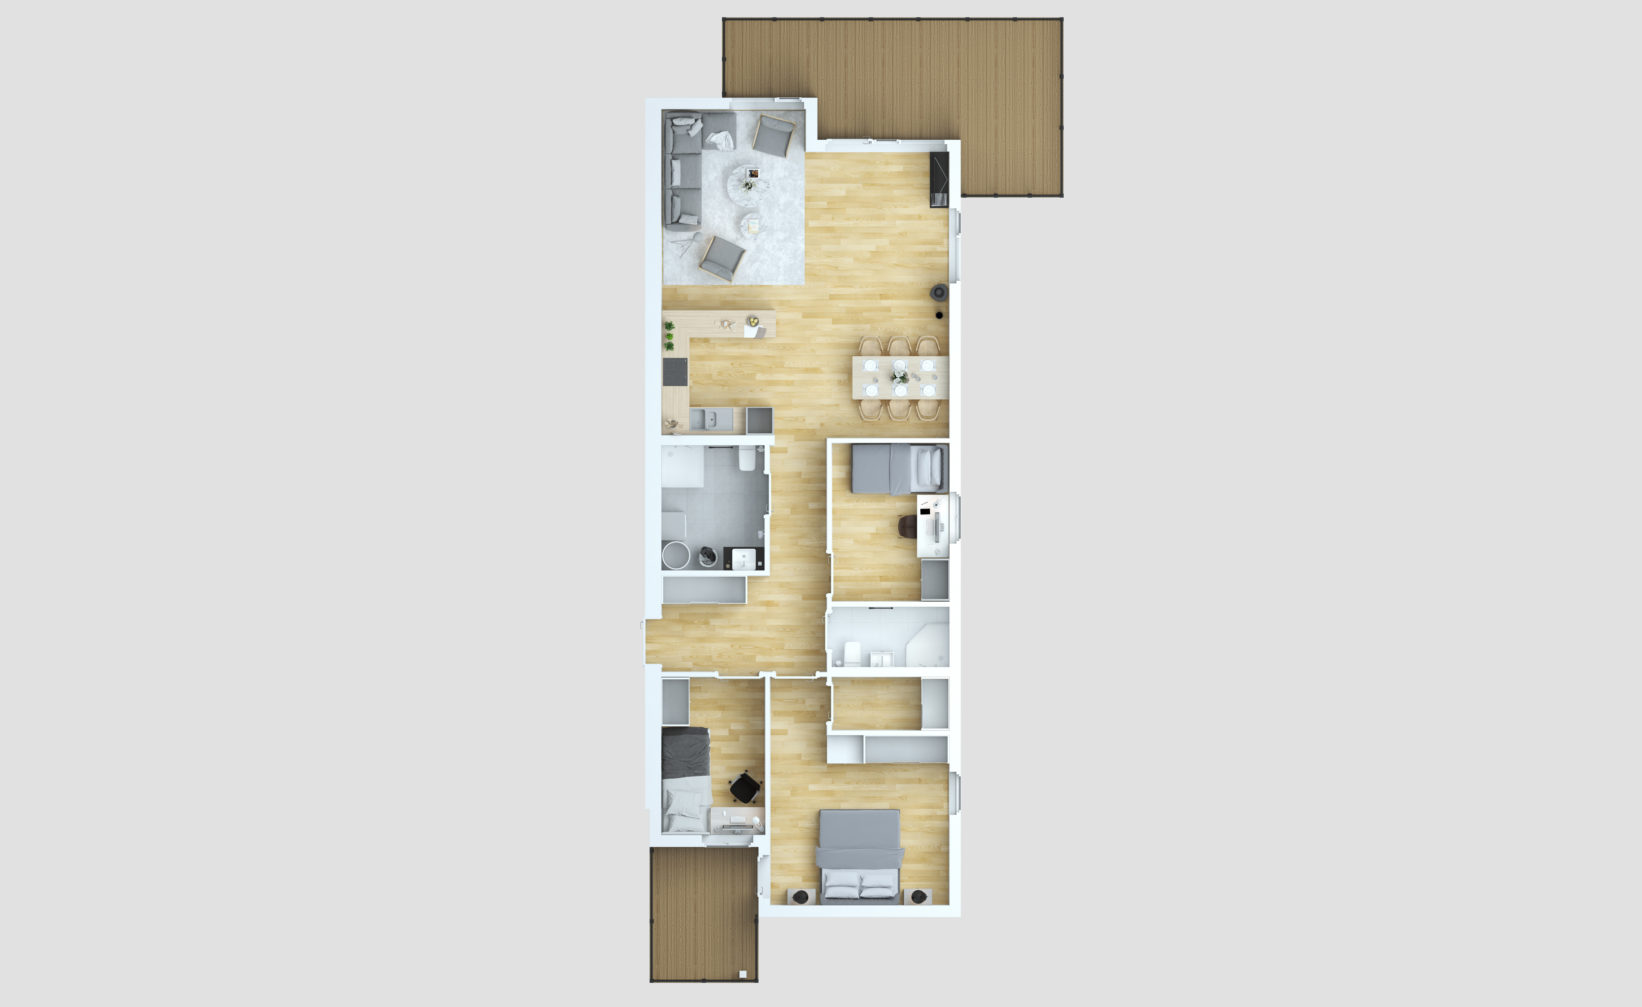 En planløsning av en to-roms leilighet opprettet i 2016 for optimal salgsvisualisering for Klient: Opthimal.